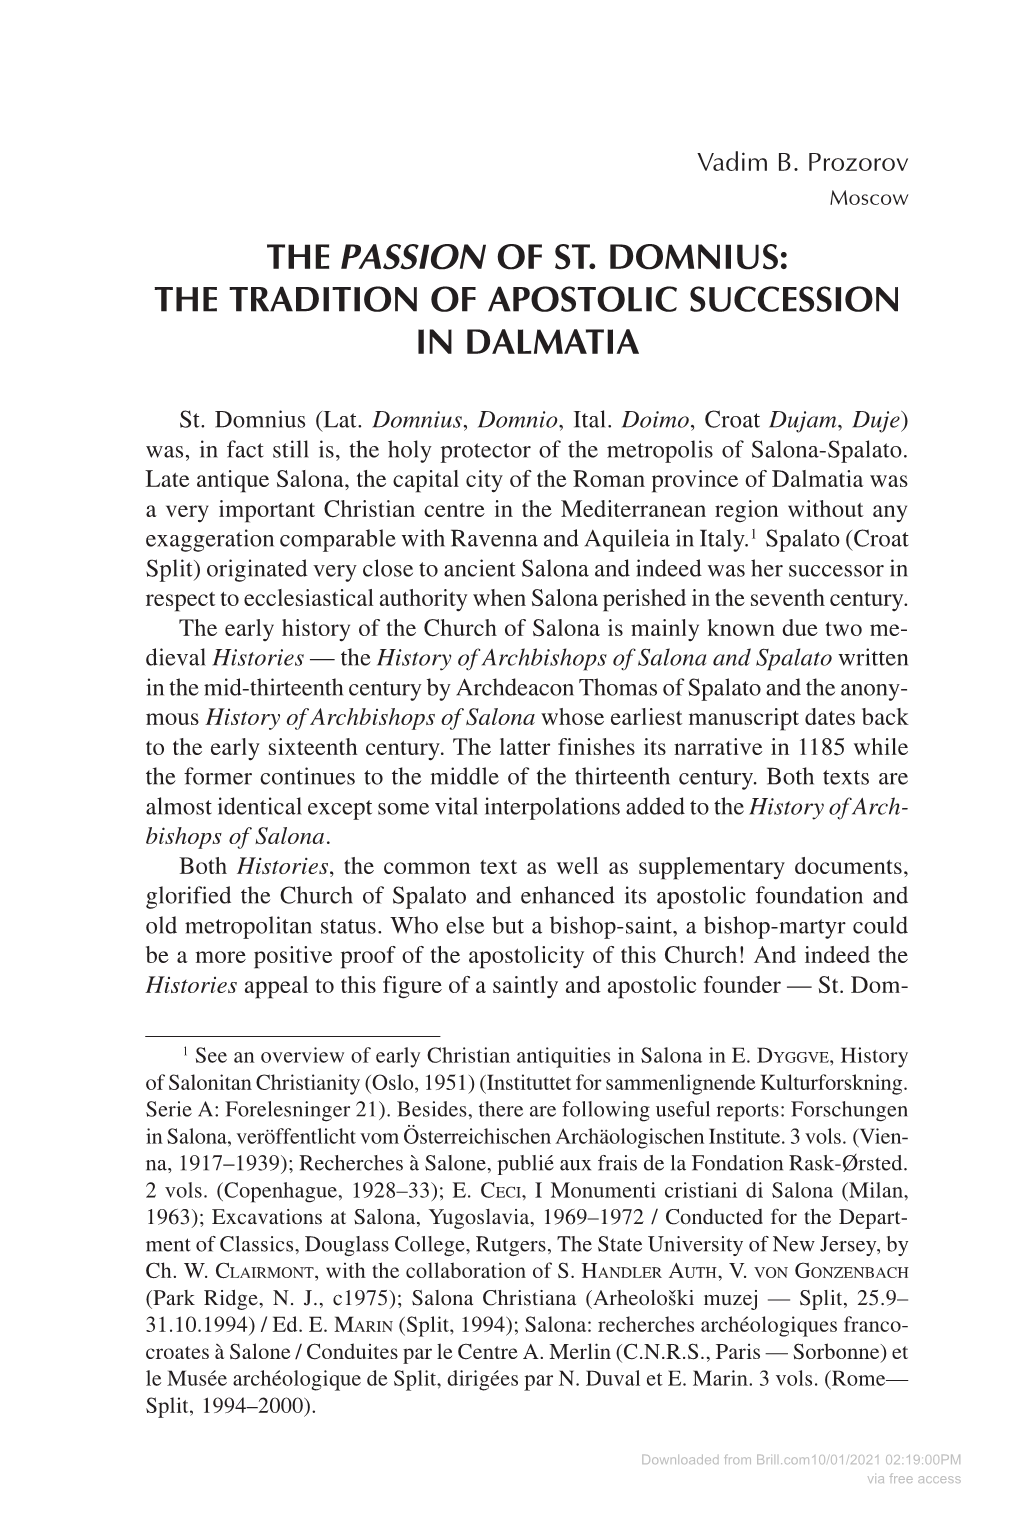 The Tradition of Apostolic Succession in Dalmatia